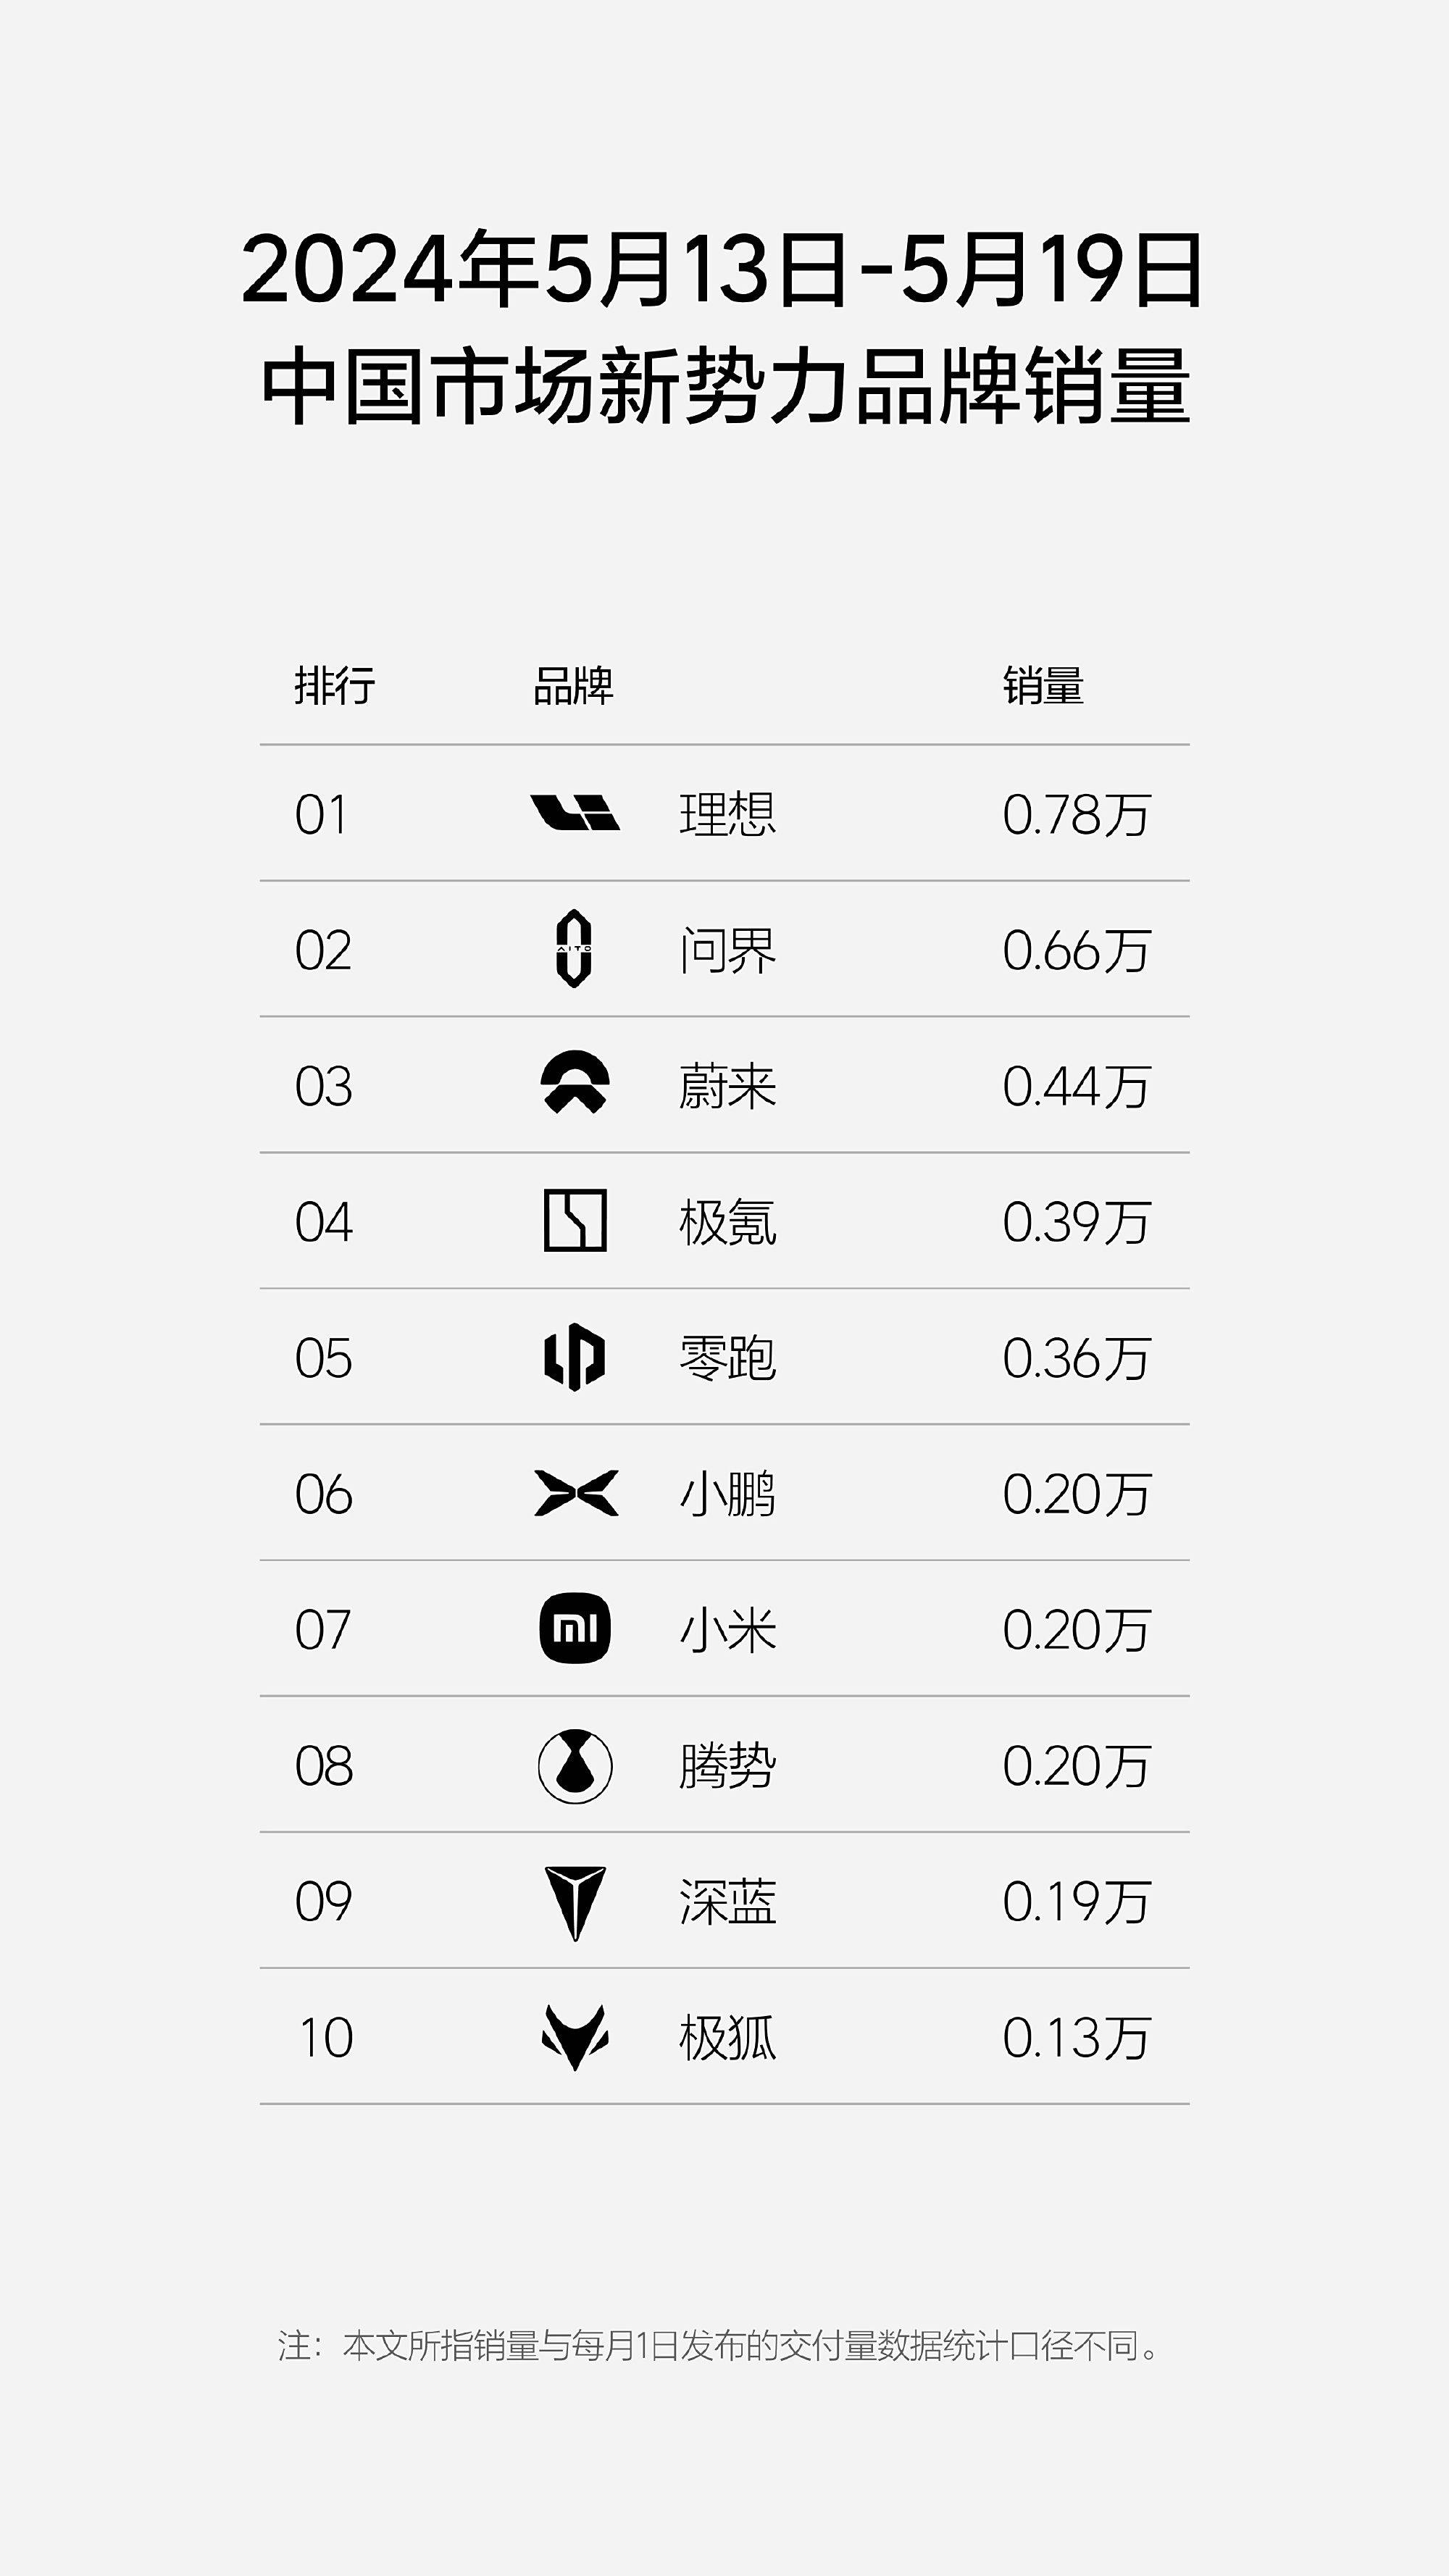 李发布第20周销量榜，小米上升势头强劲_搜狐汽车_ Sohu.com。